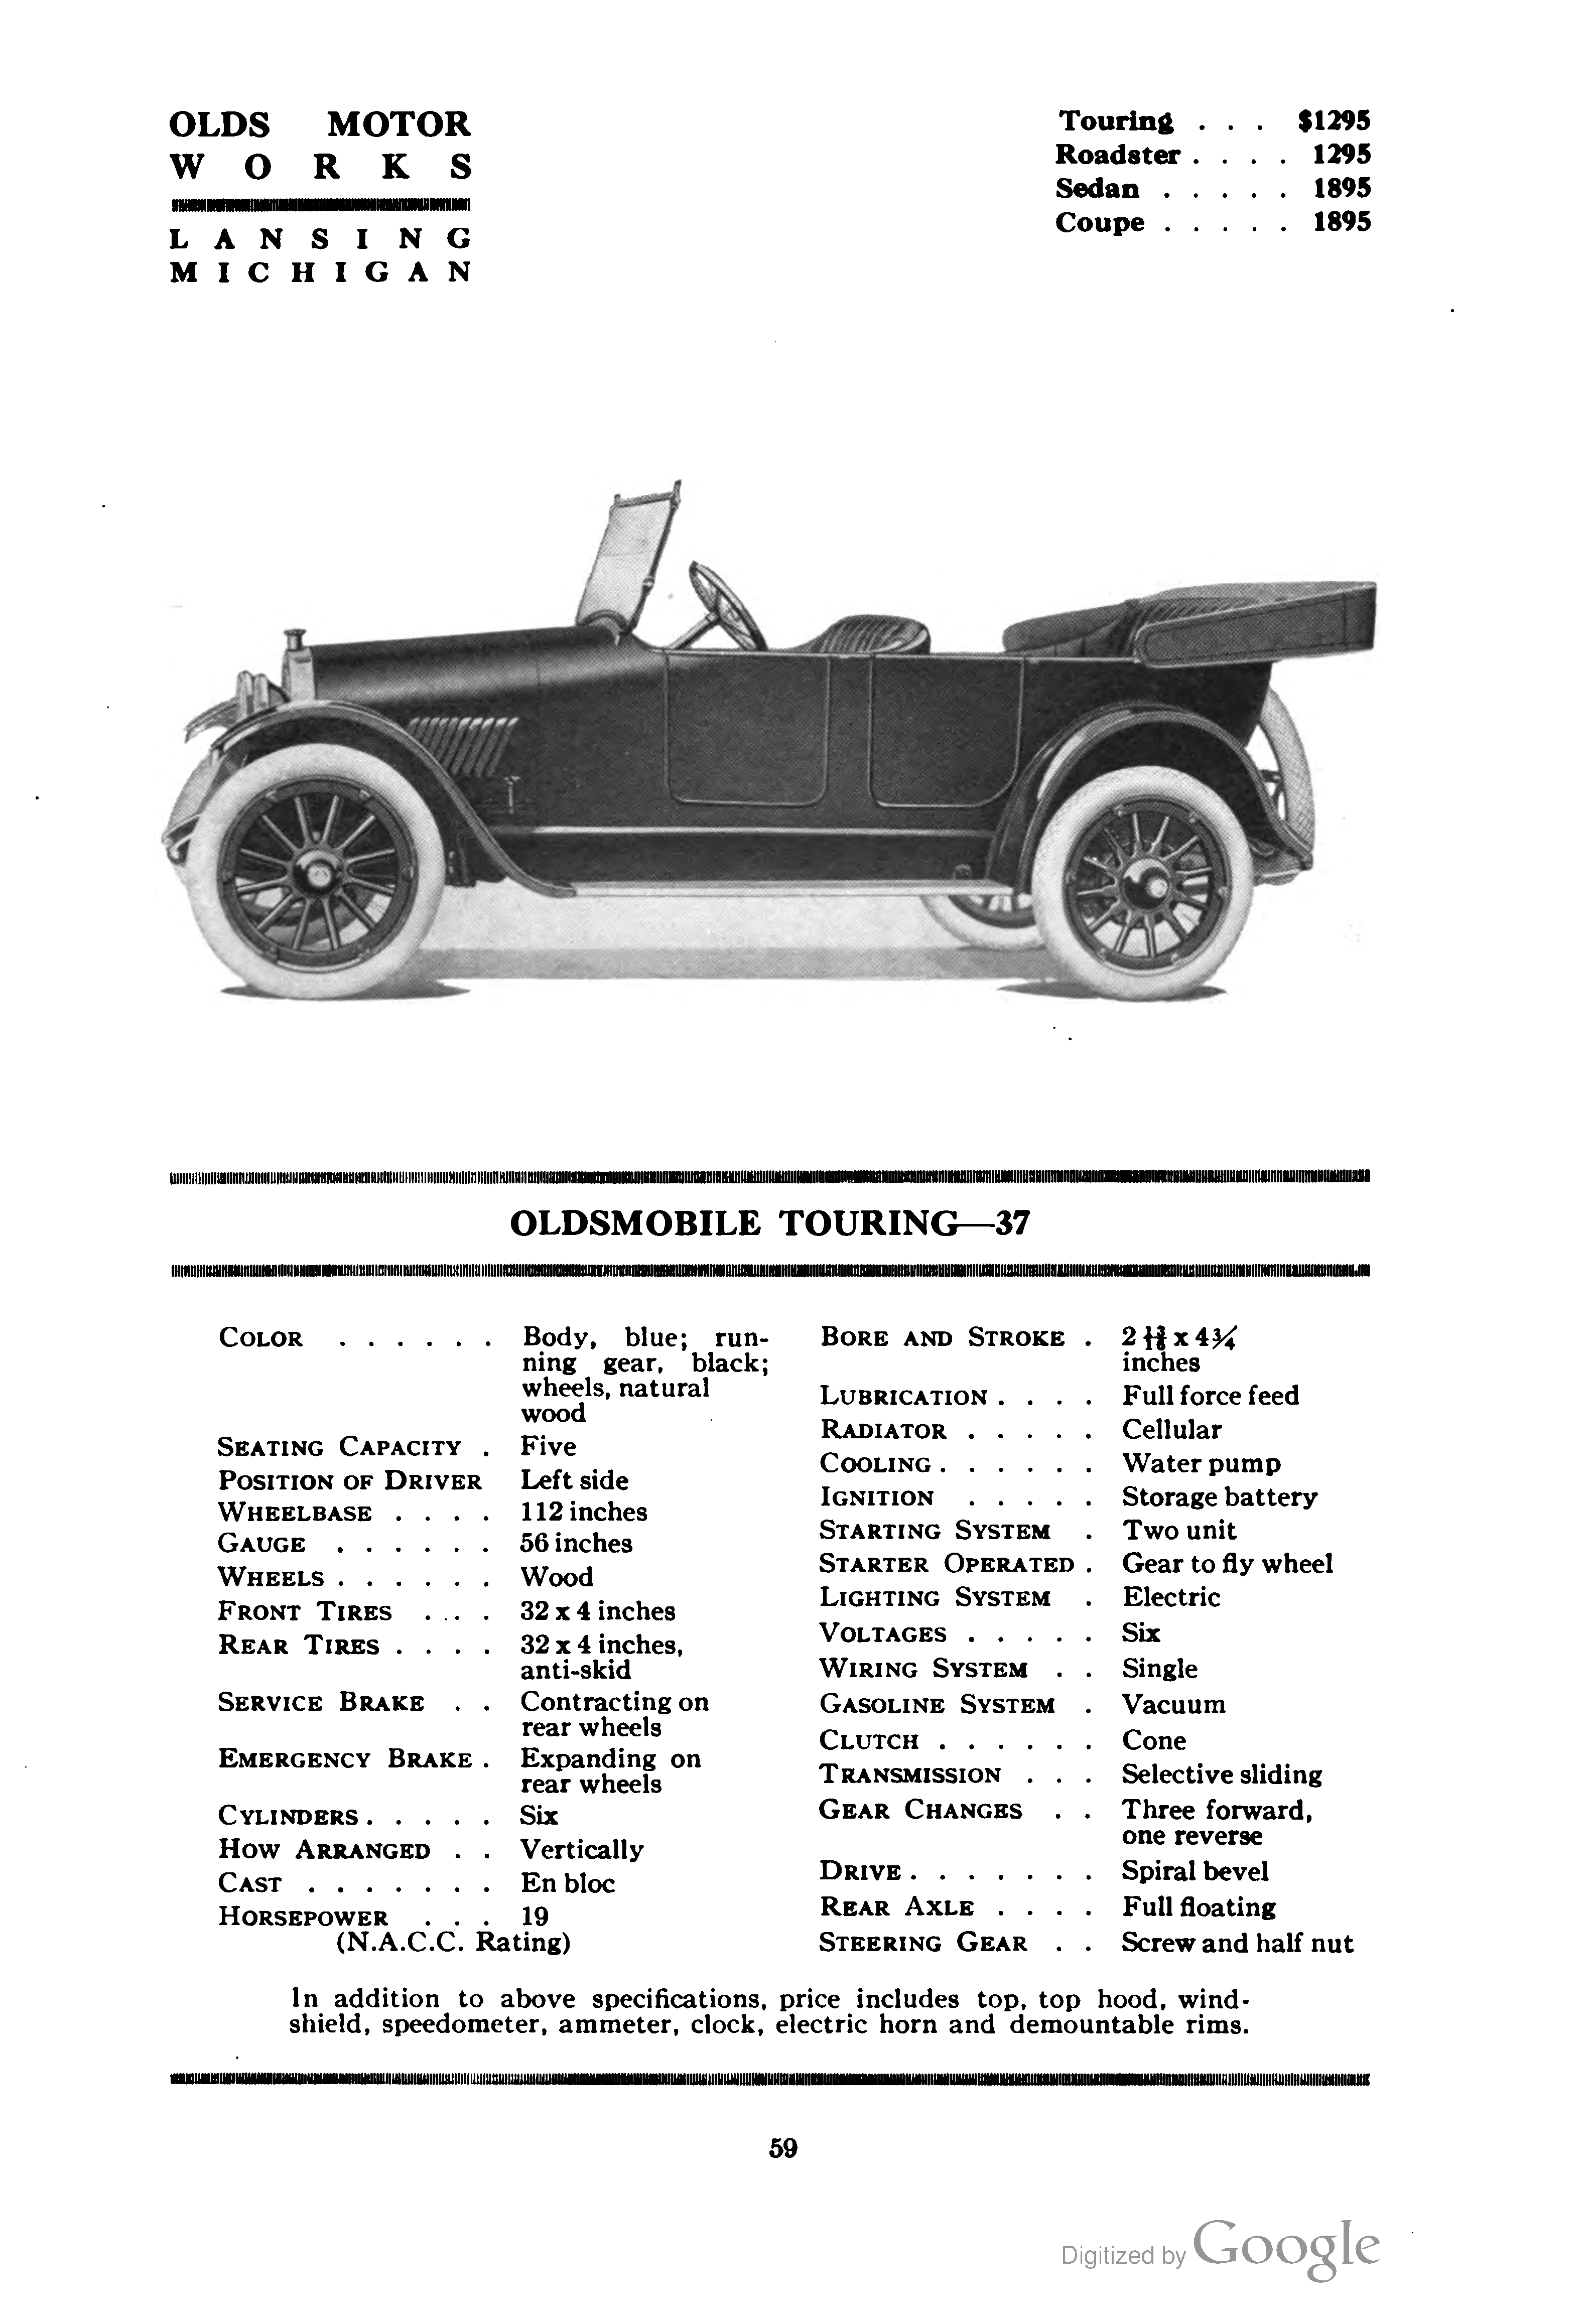 Oldsmobile Model 37 1919 #2